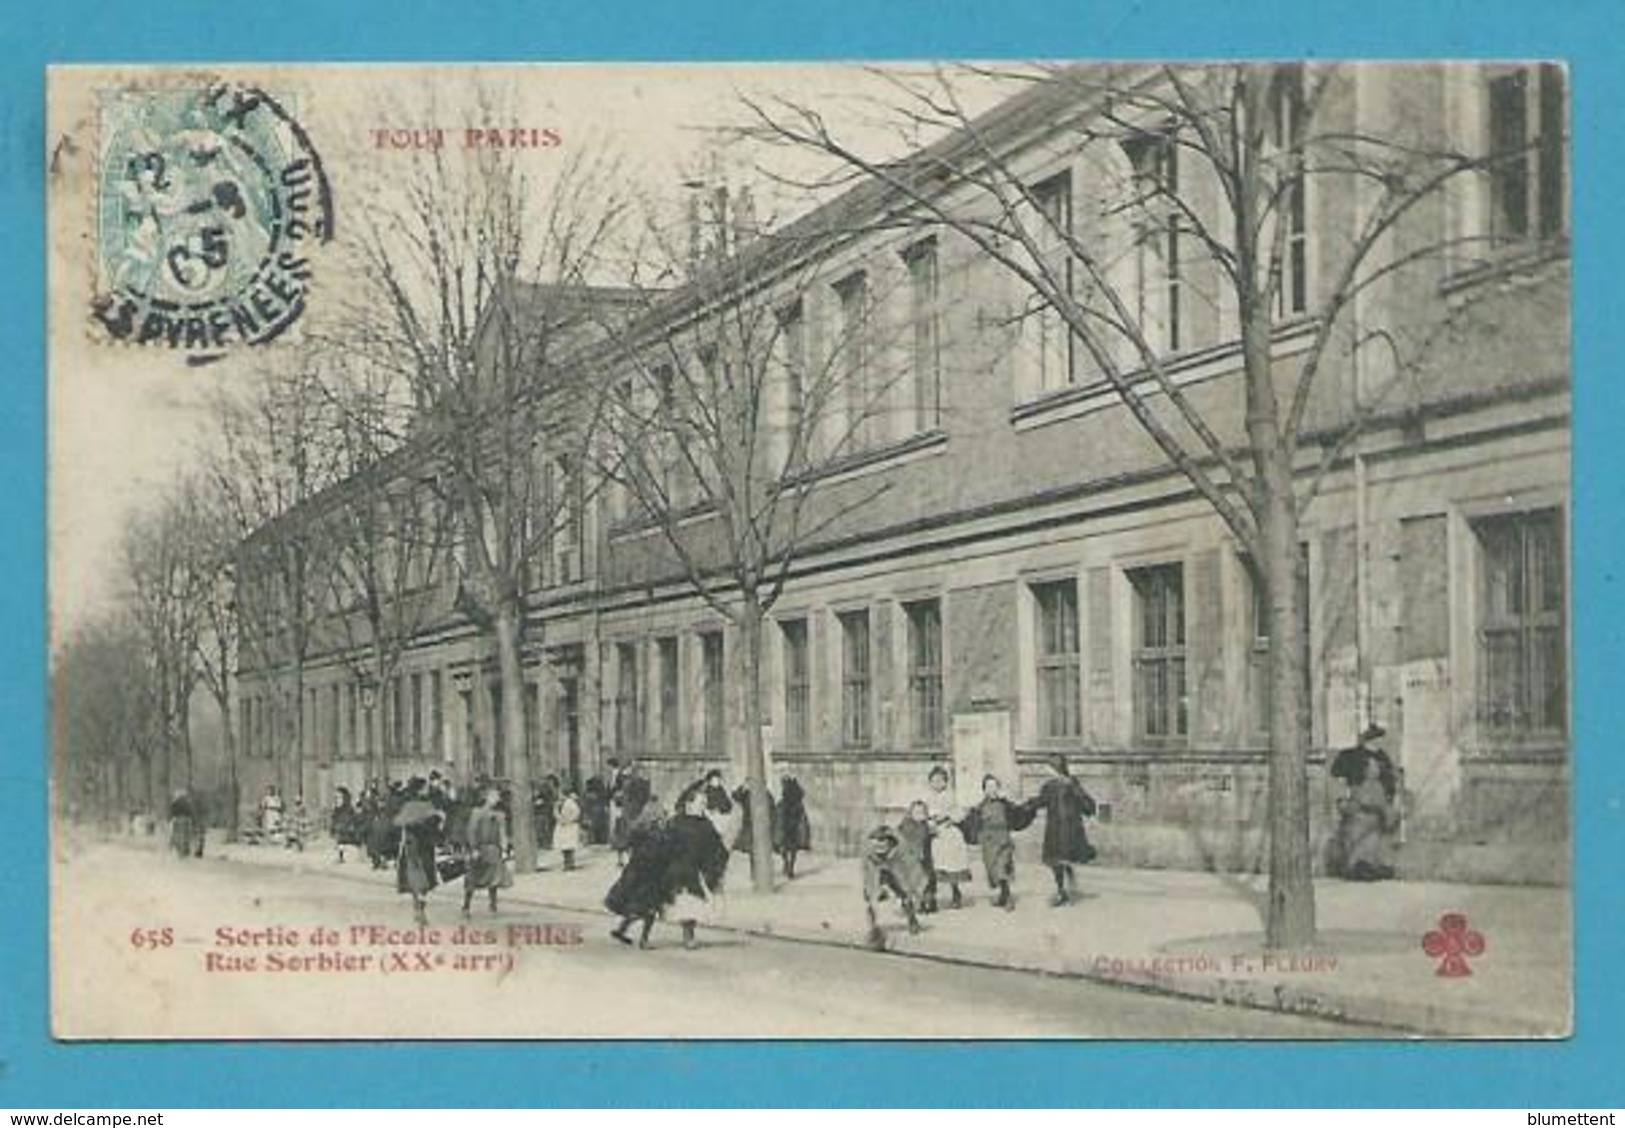 CPA 658 TOUT PARIS - Sortie De L'Ecole Des Filles Rue Sorbier (XXème) - Editeur FLEURY - Paris (20)